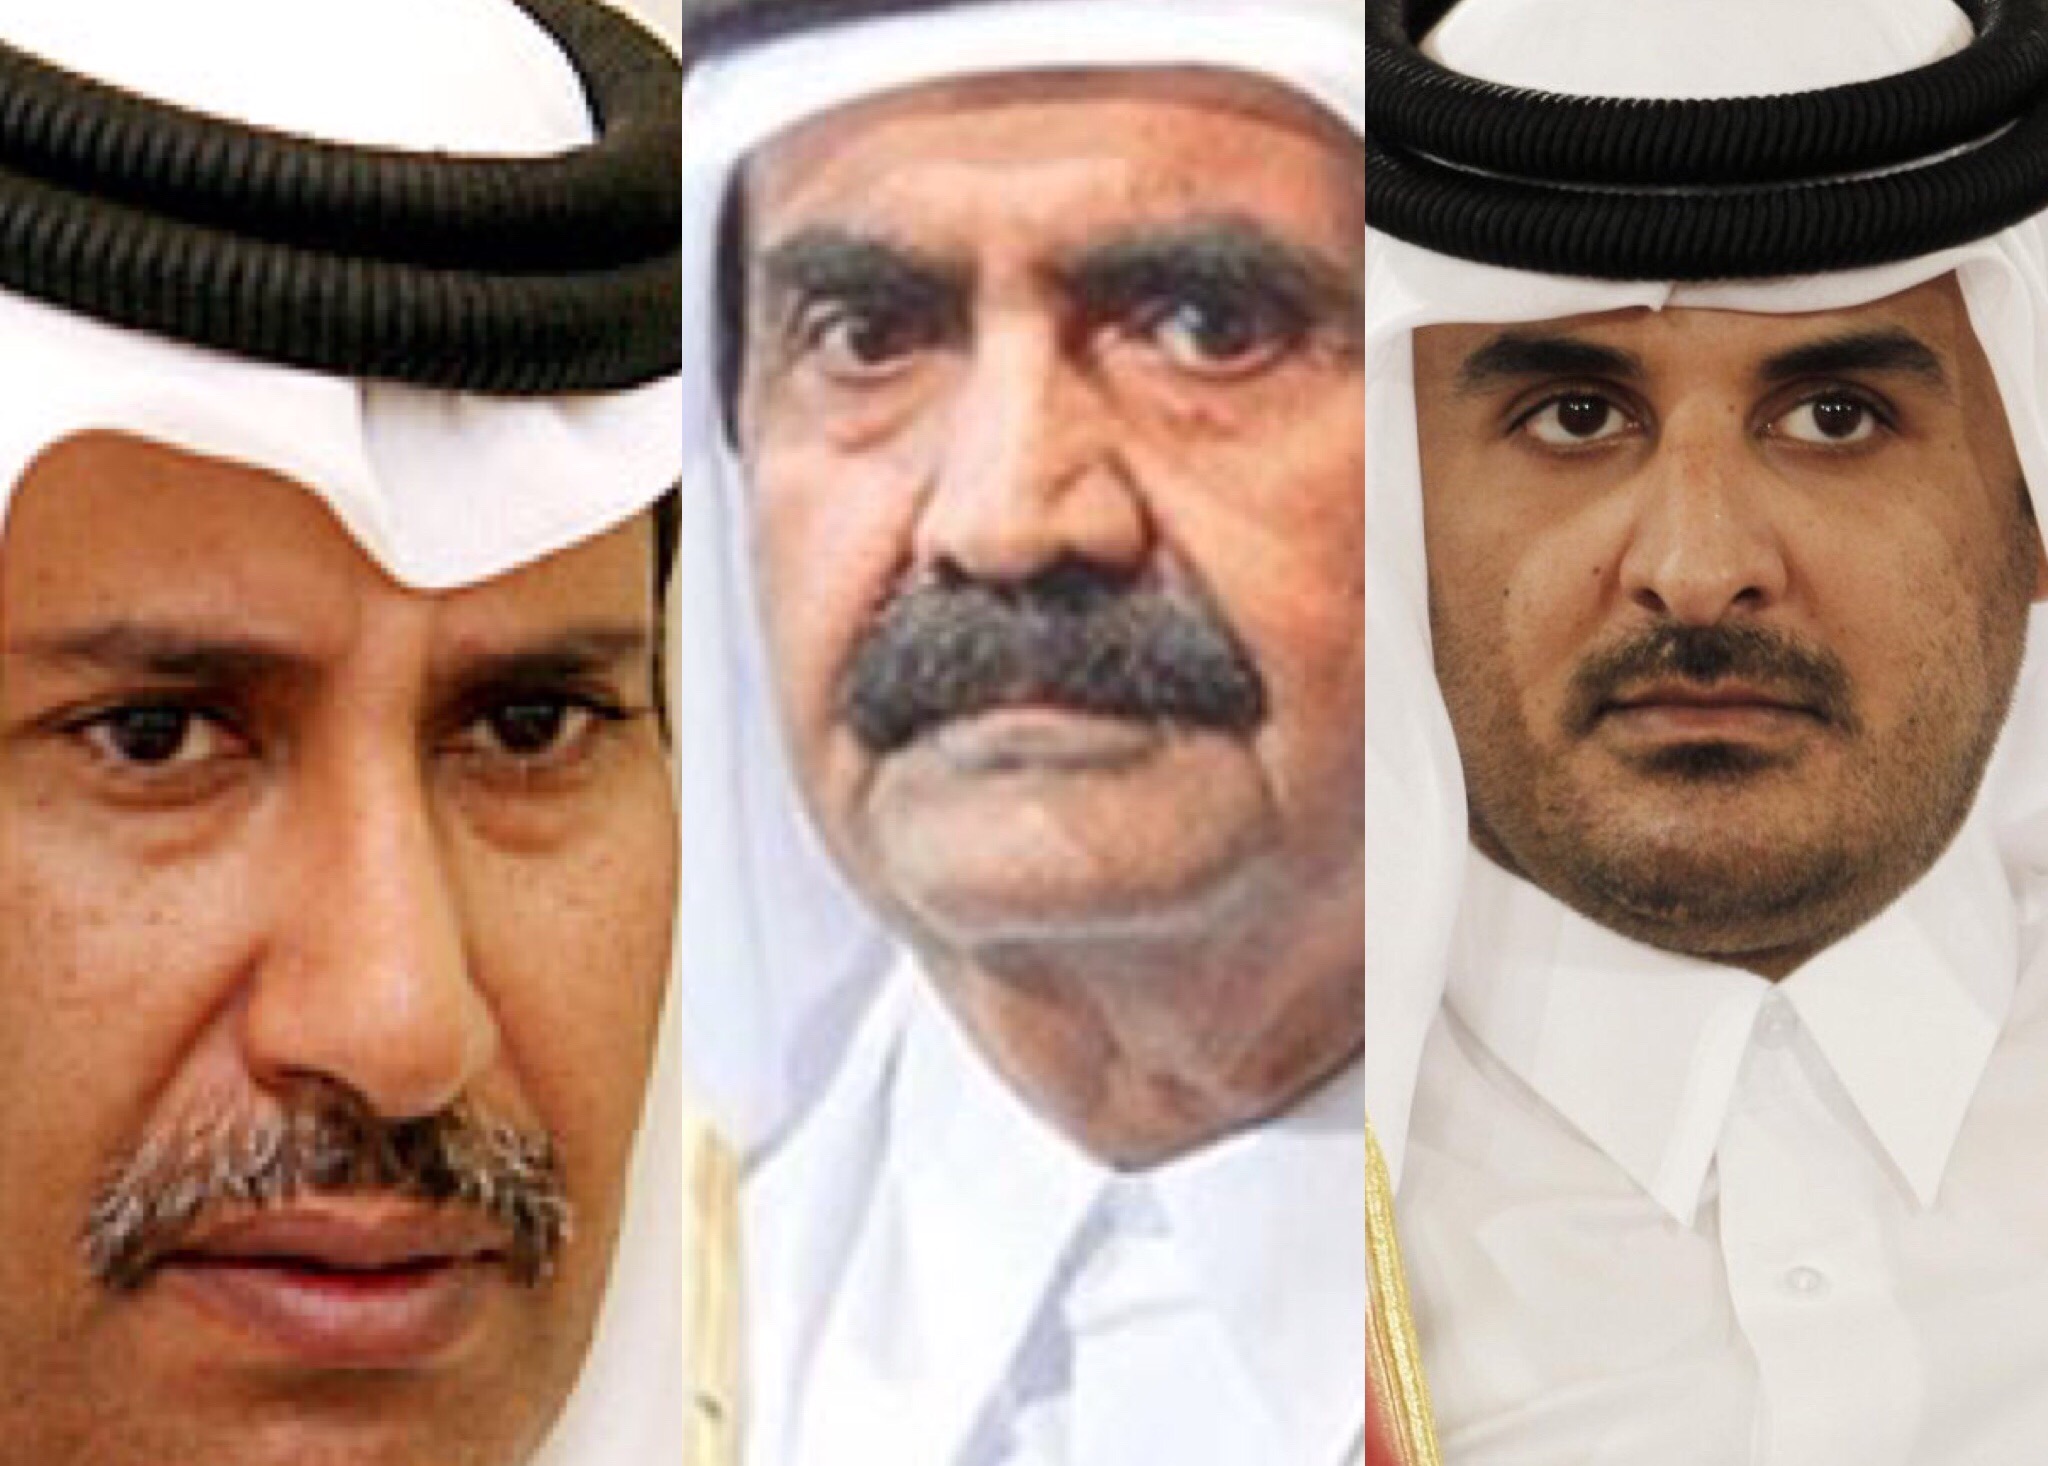 ماضي #قطر يفضح حاضرها.. العائلة الحاكمة تحمي وتأوي إرهابي القاعدة!